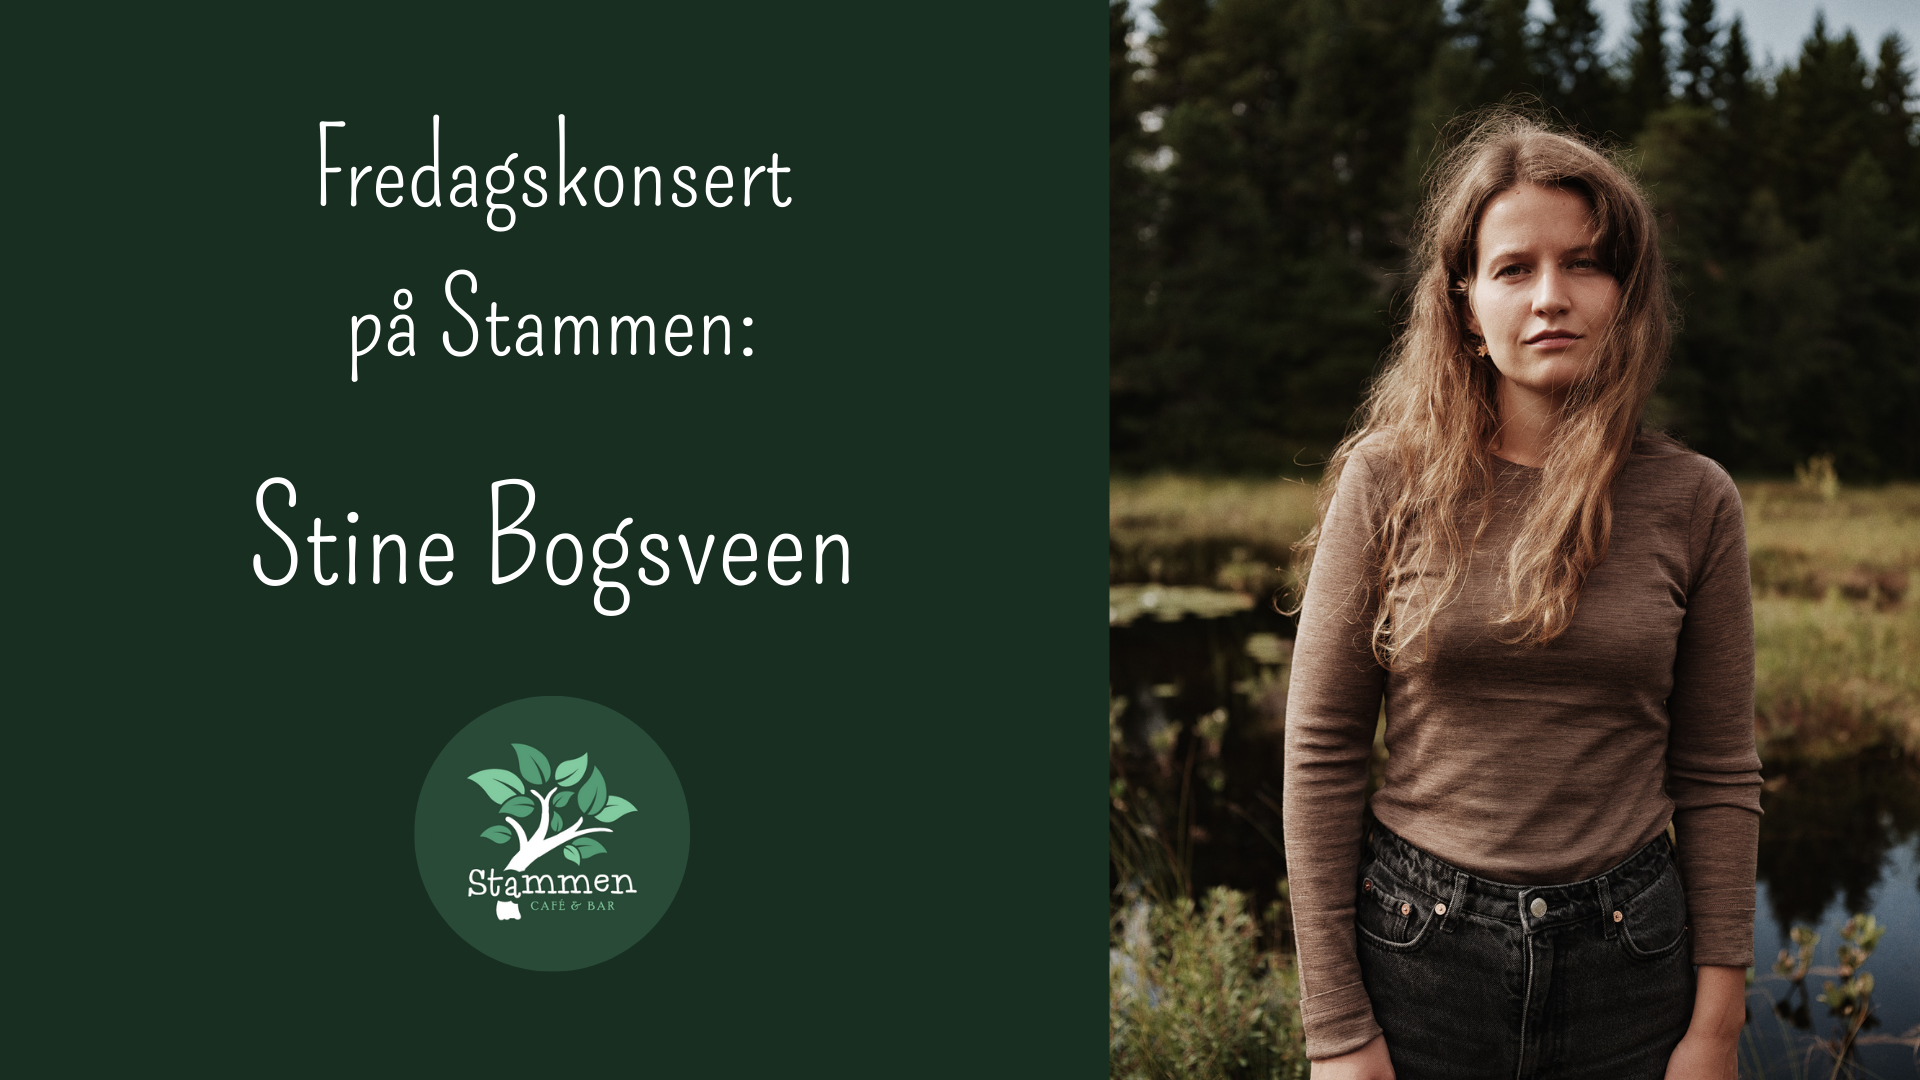 Fredagskonsert med Stine Bogsveen